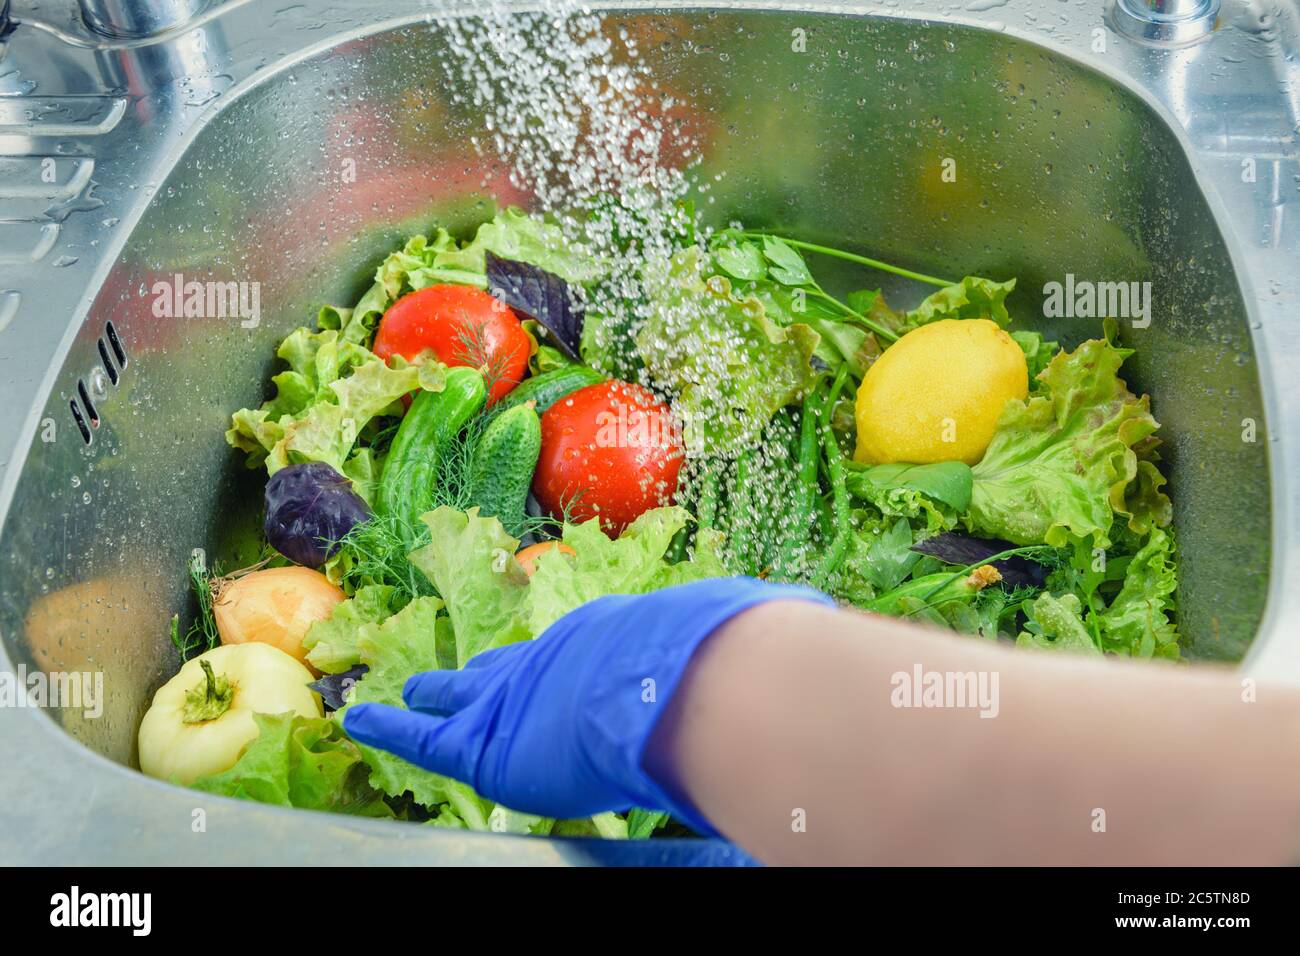 Come lavare l'insalata: acqua tiepida e niente cloro